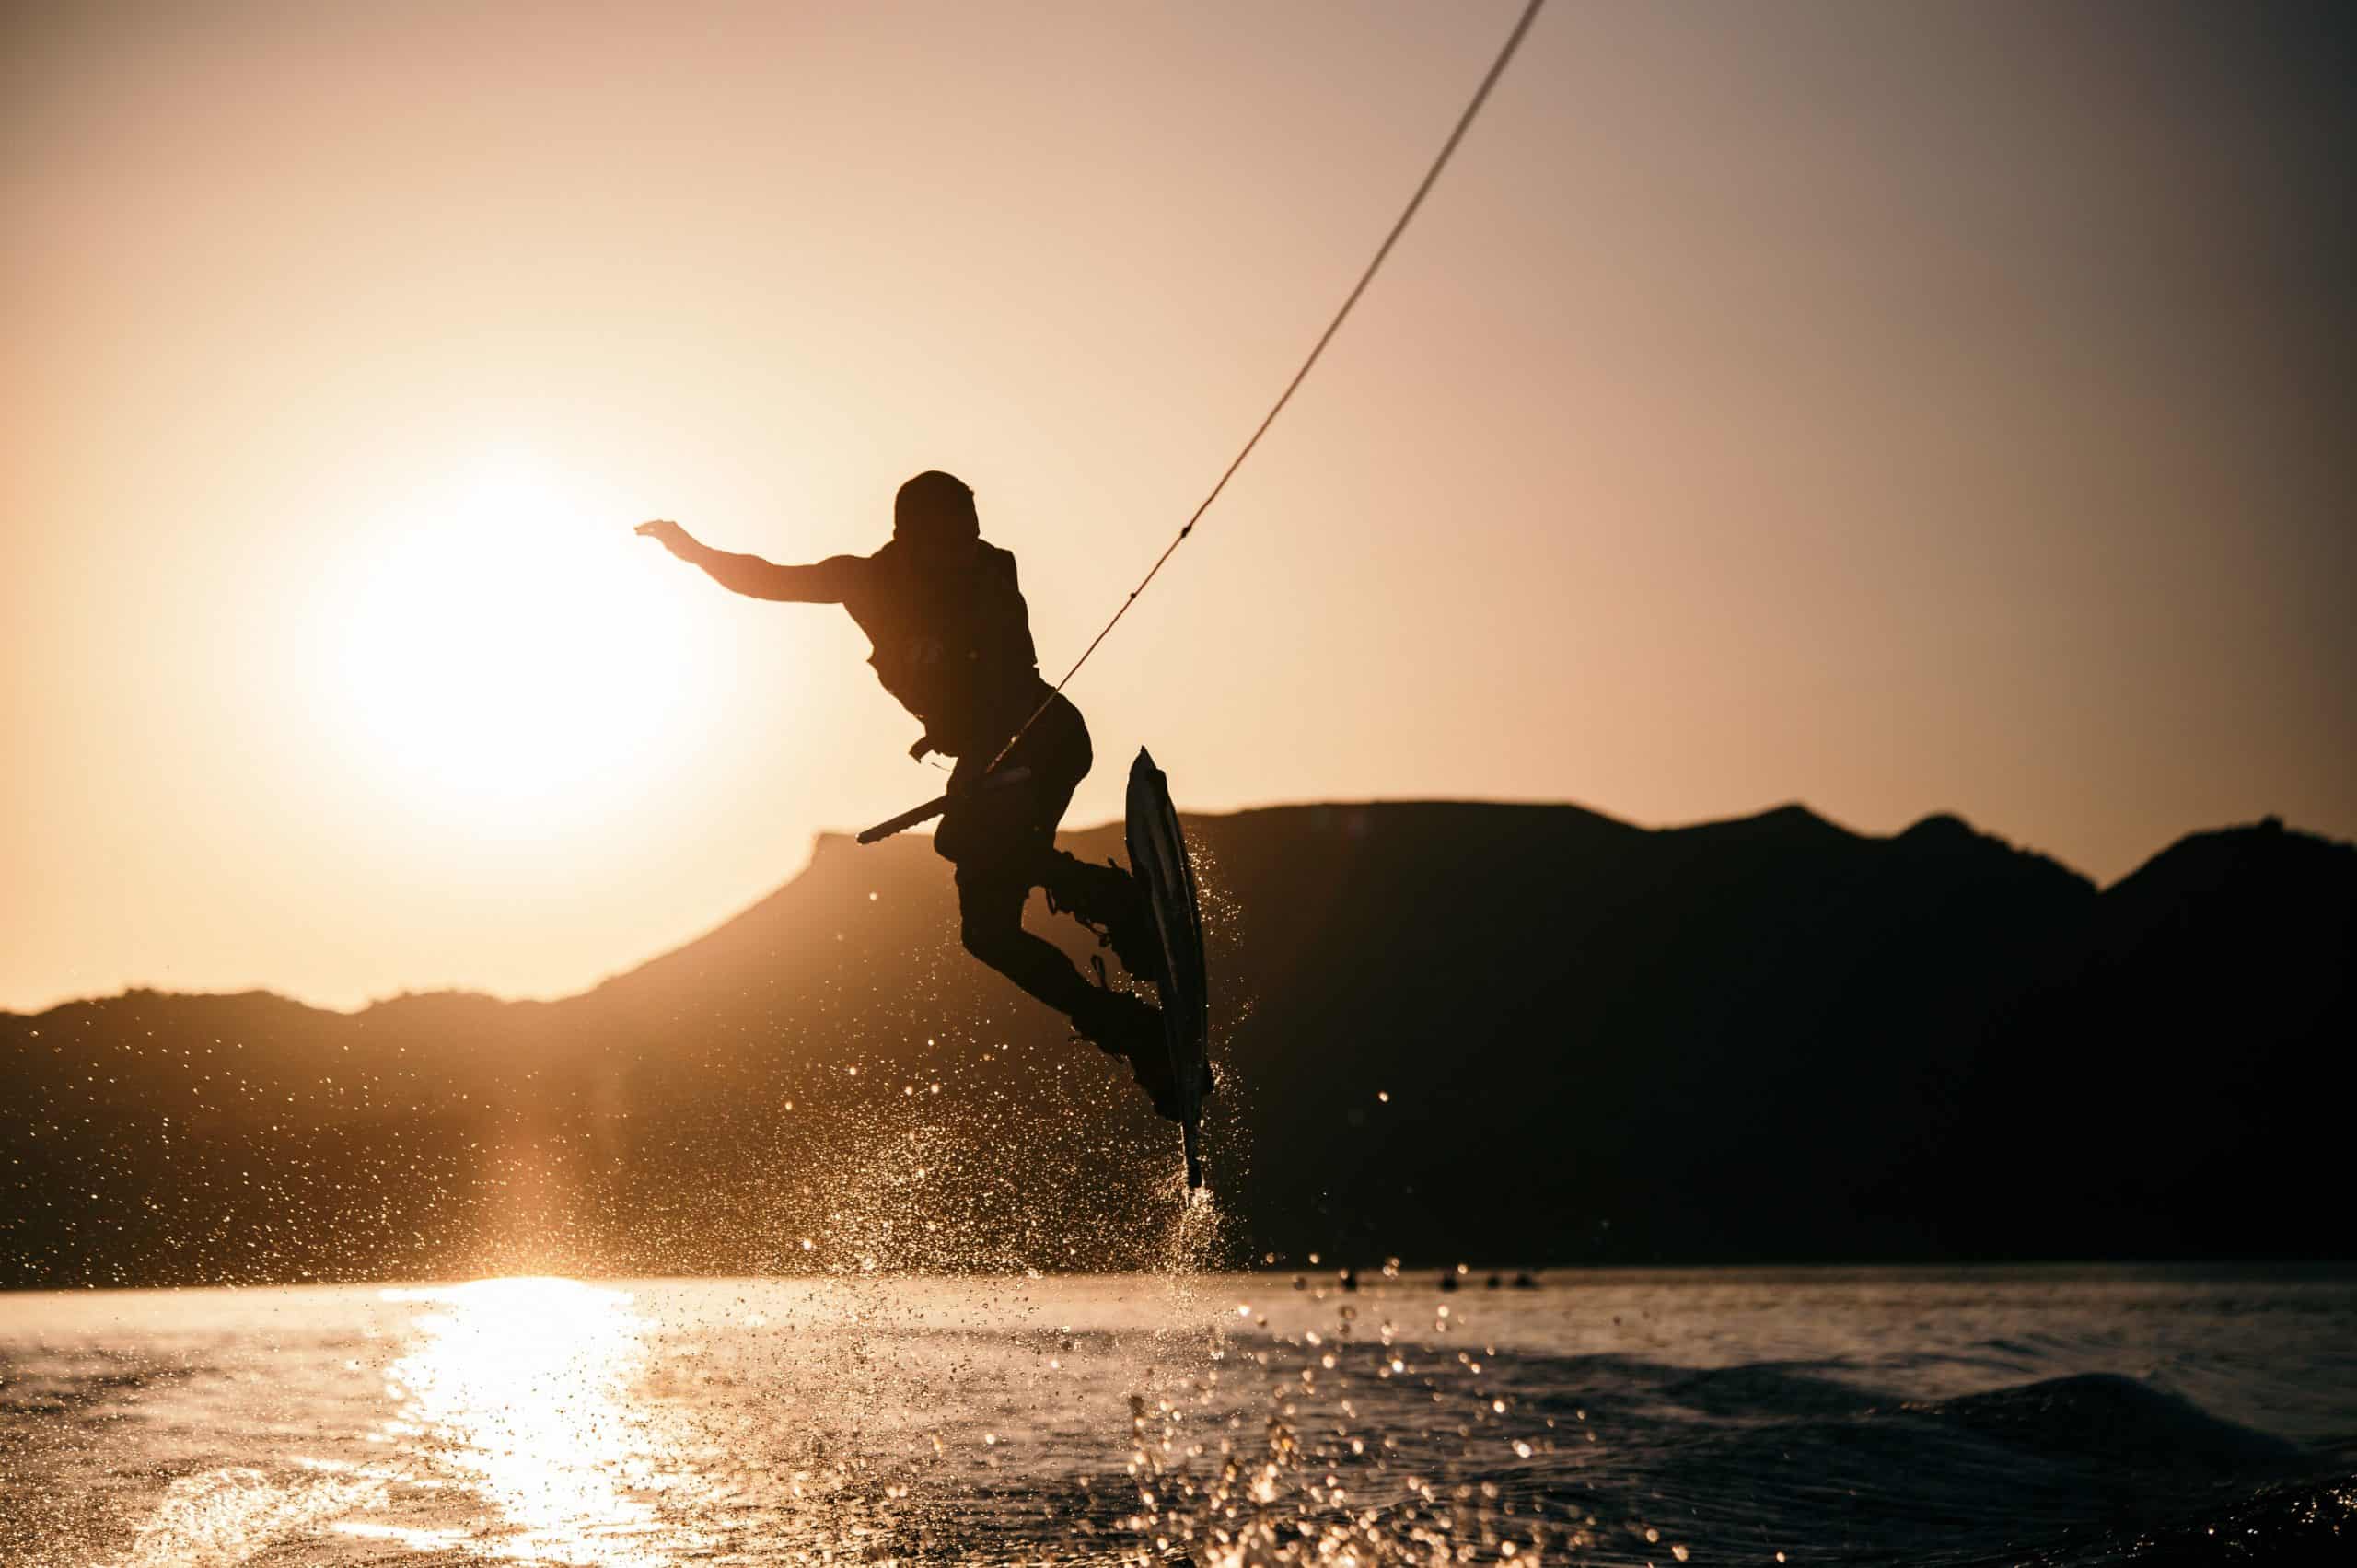 Un homme pratiquant une activité en bateau : le wakeboard, sur fond de coucher de soleil.